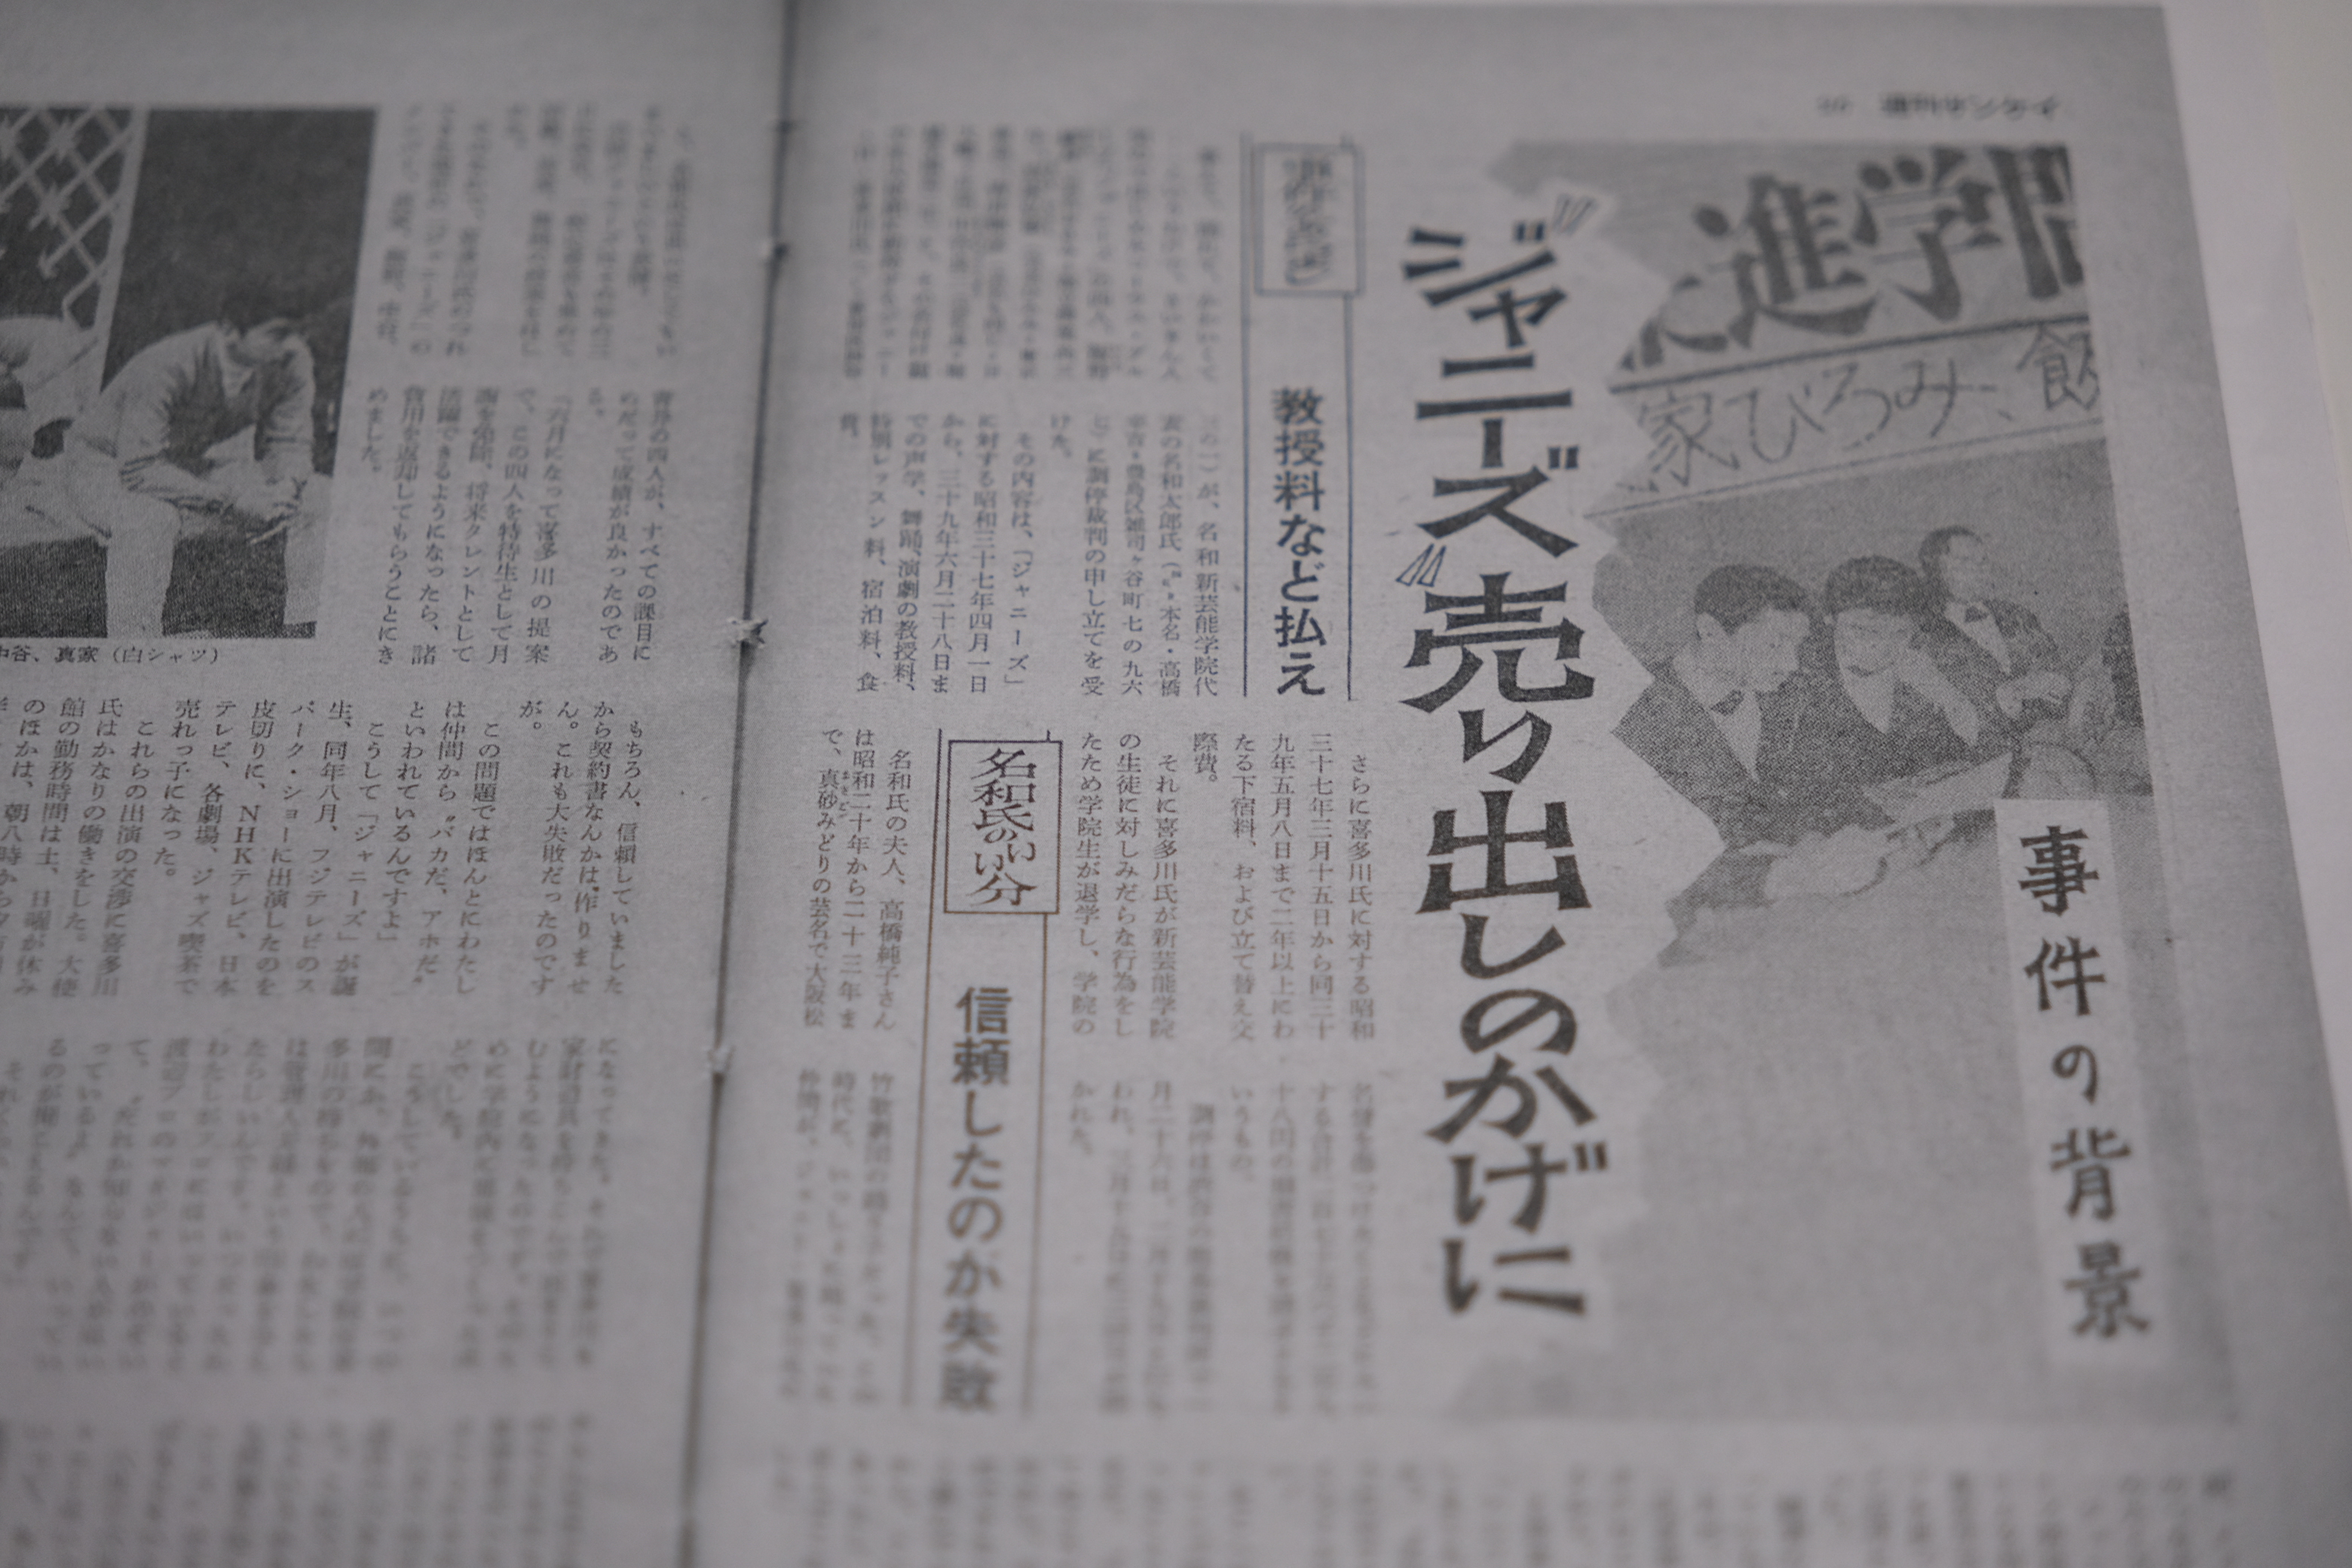 画像集】ジャニー喜多川氏の性加害疑惑を報じる1960年代当時の週刊誌報道 | ハフポスト 画像枠